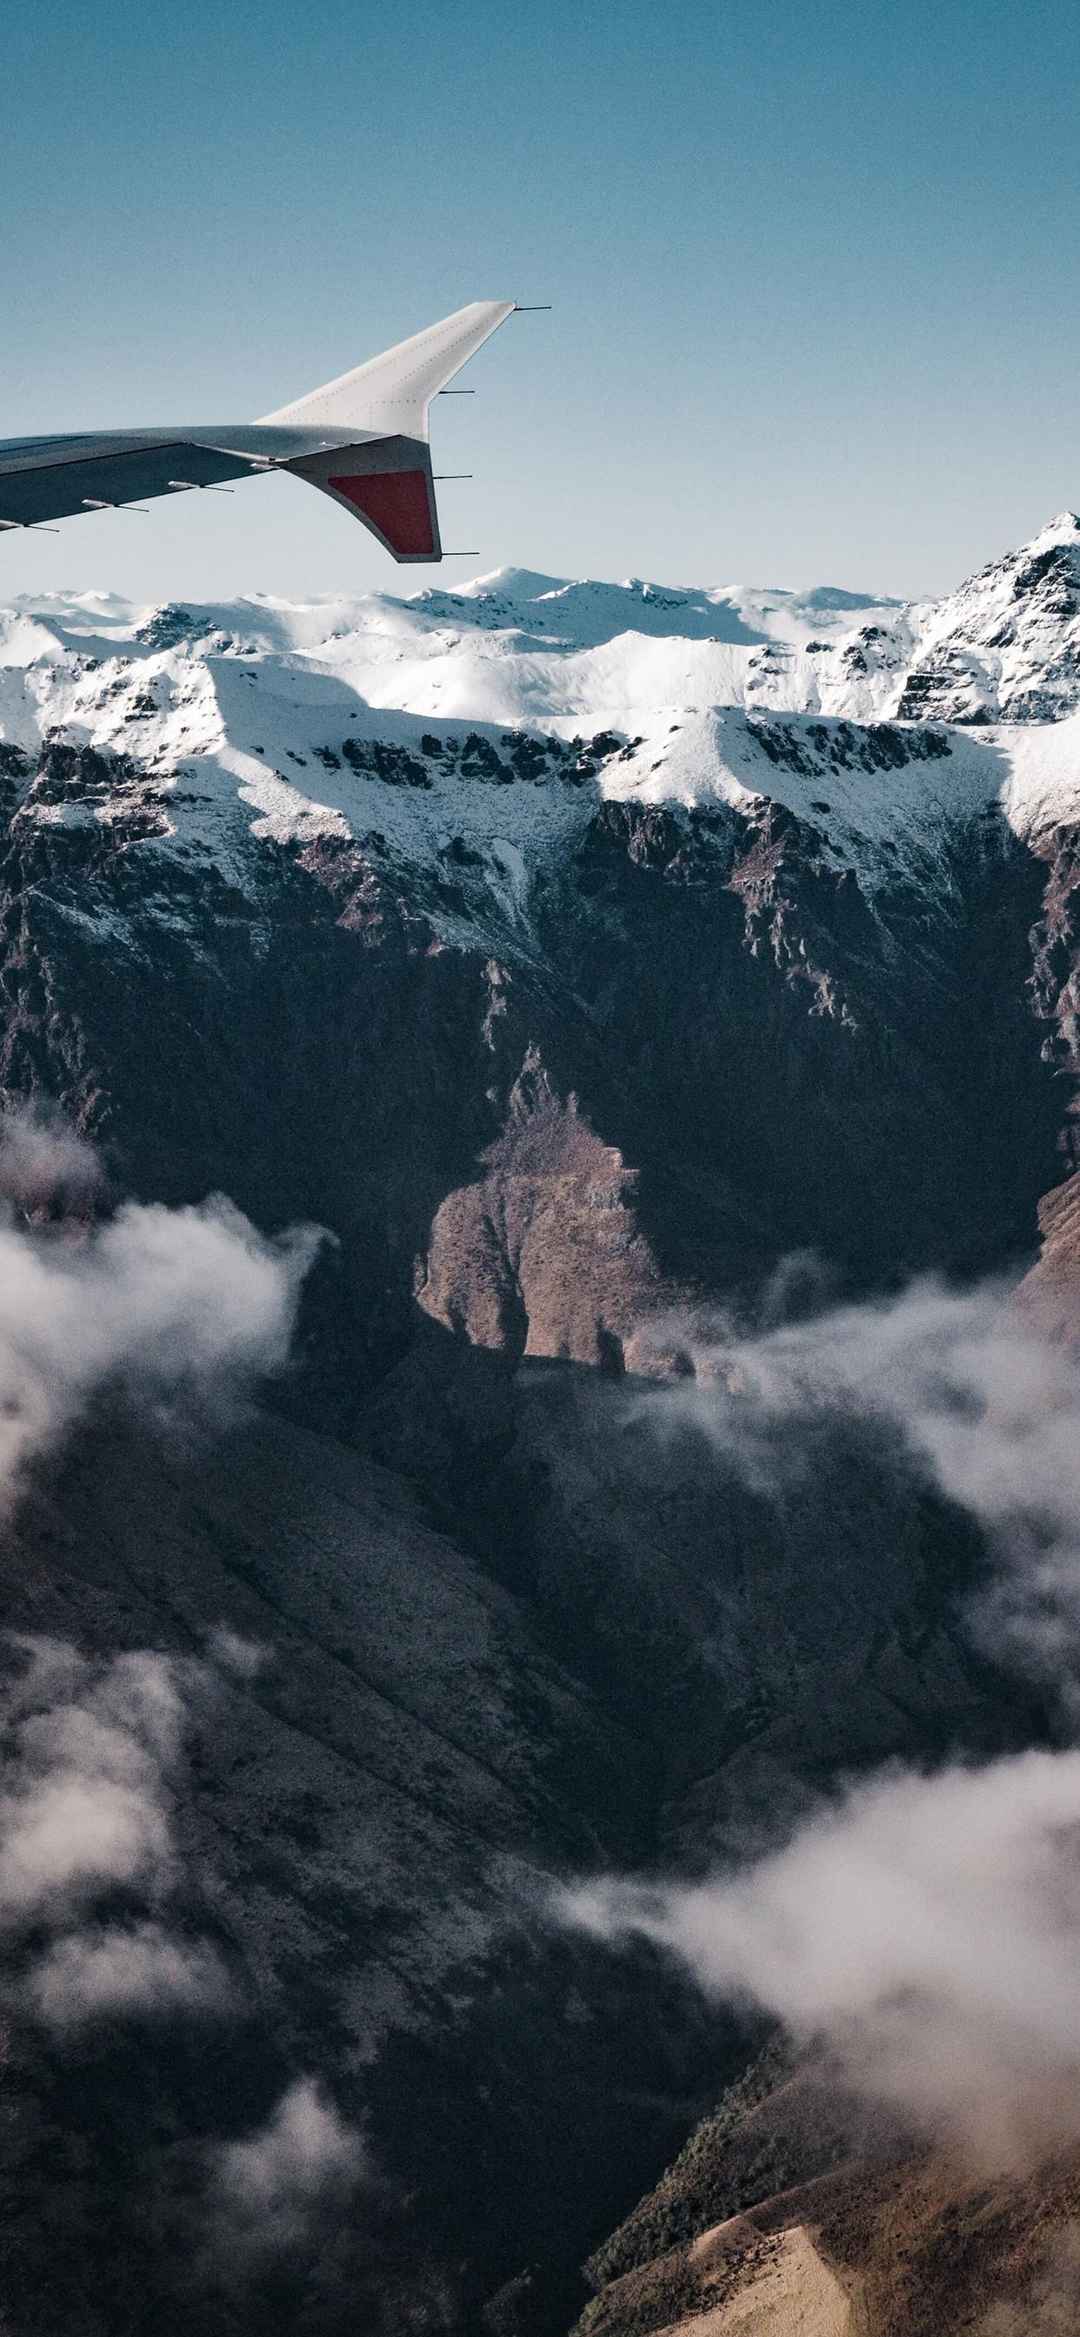 自然奇幻雪山漂亮手机壁纸高清图片